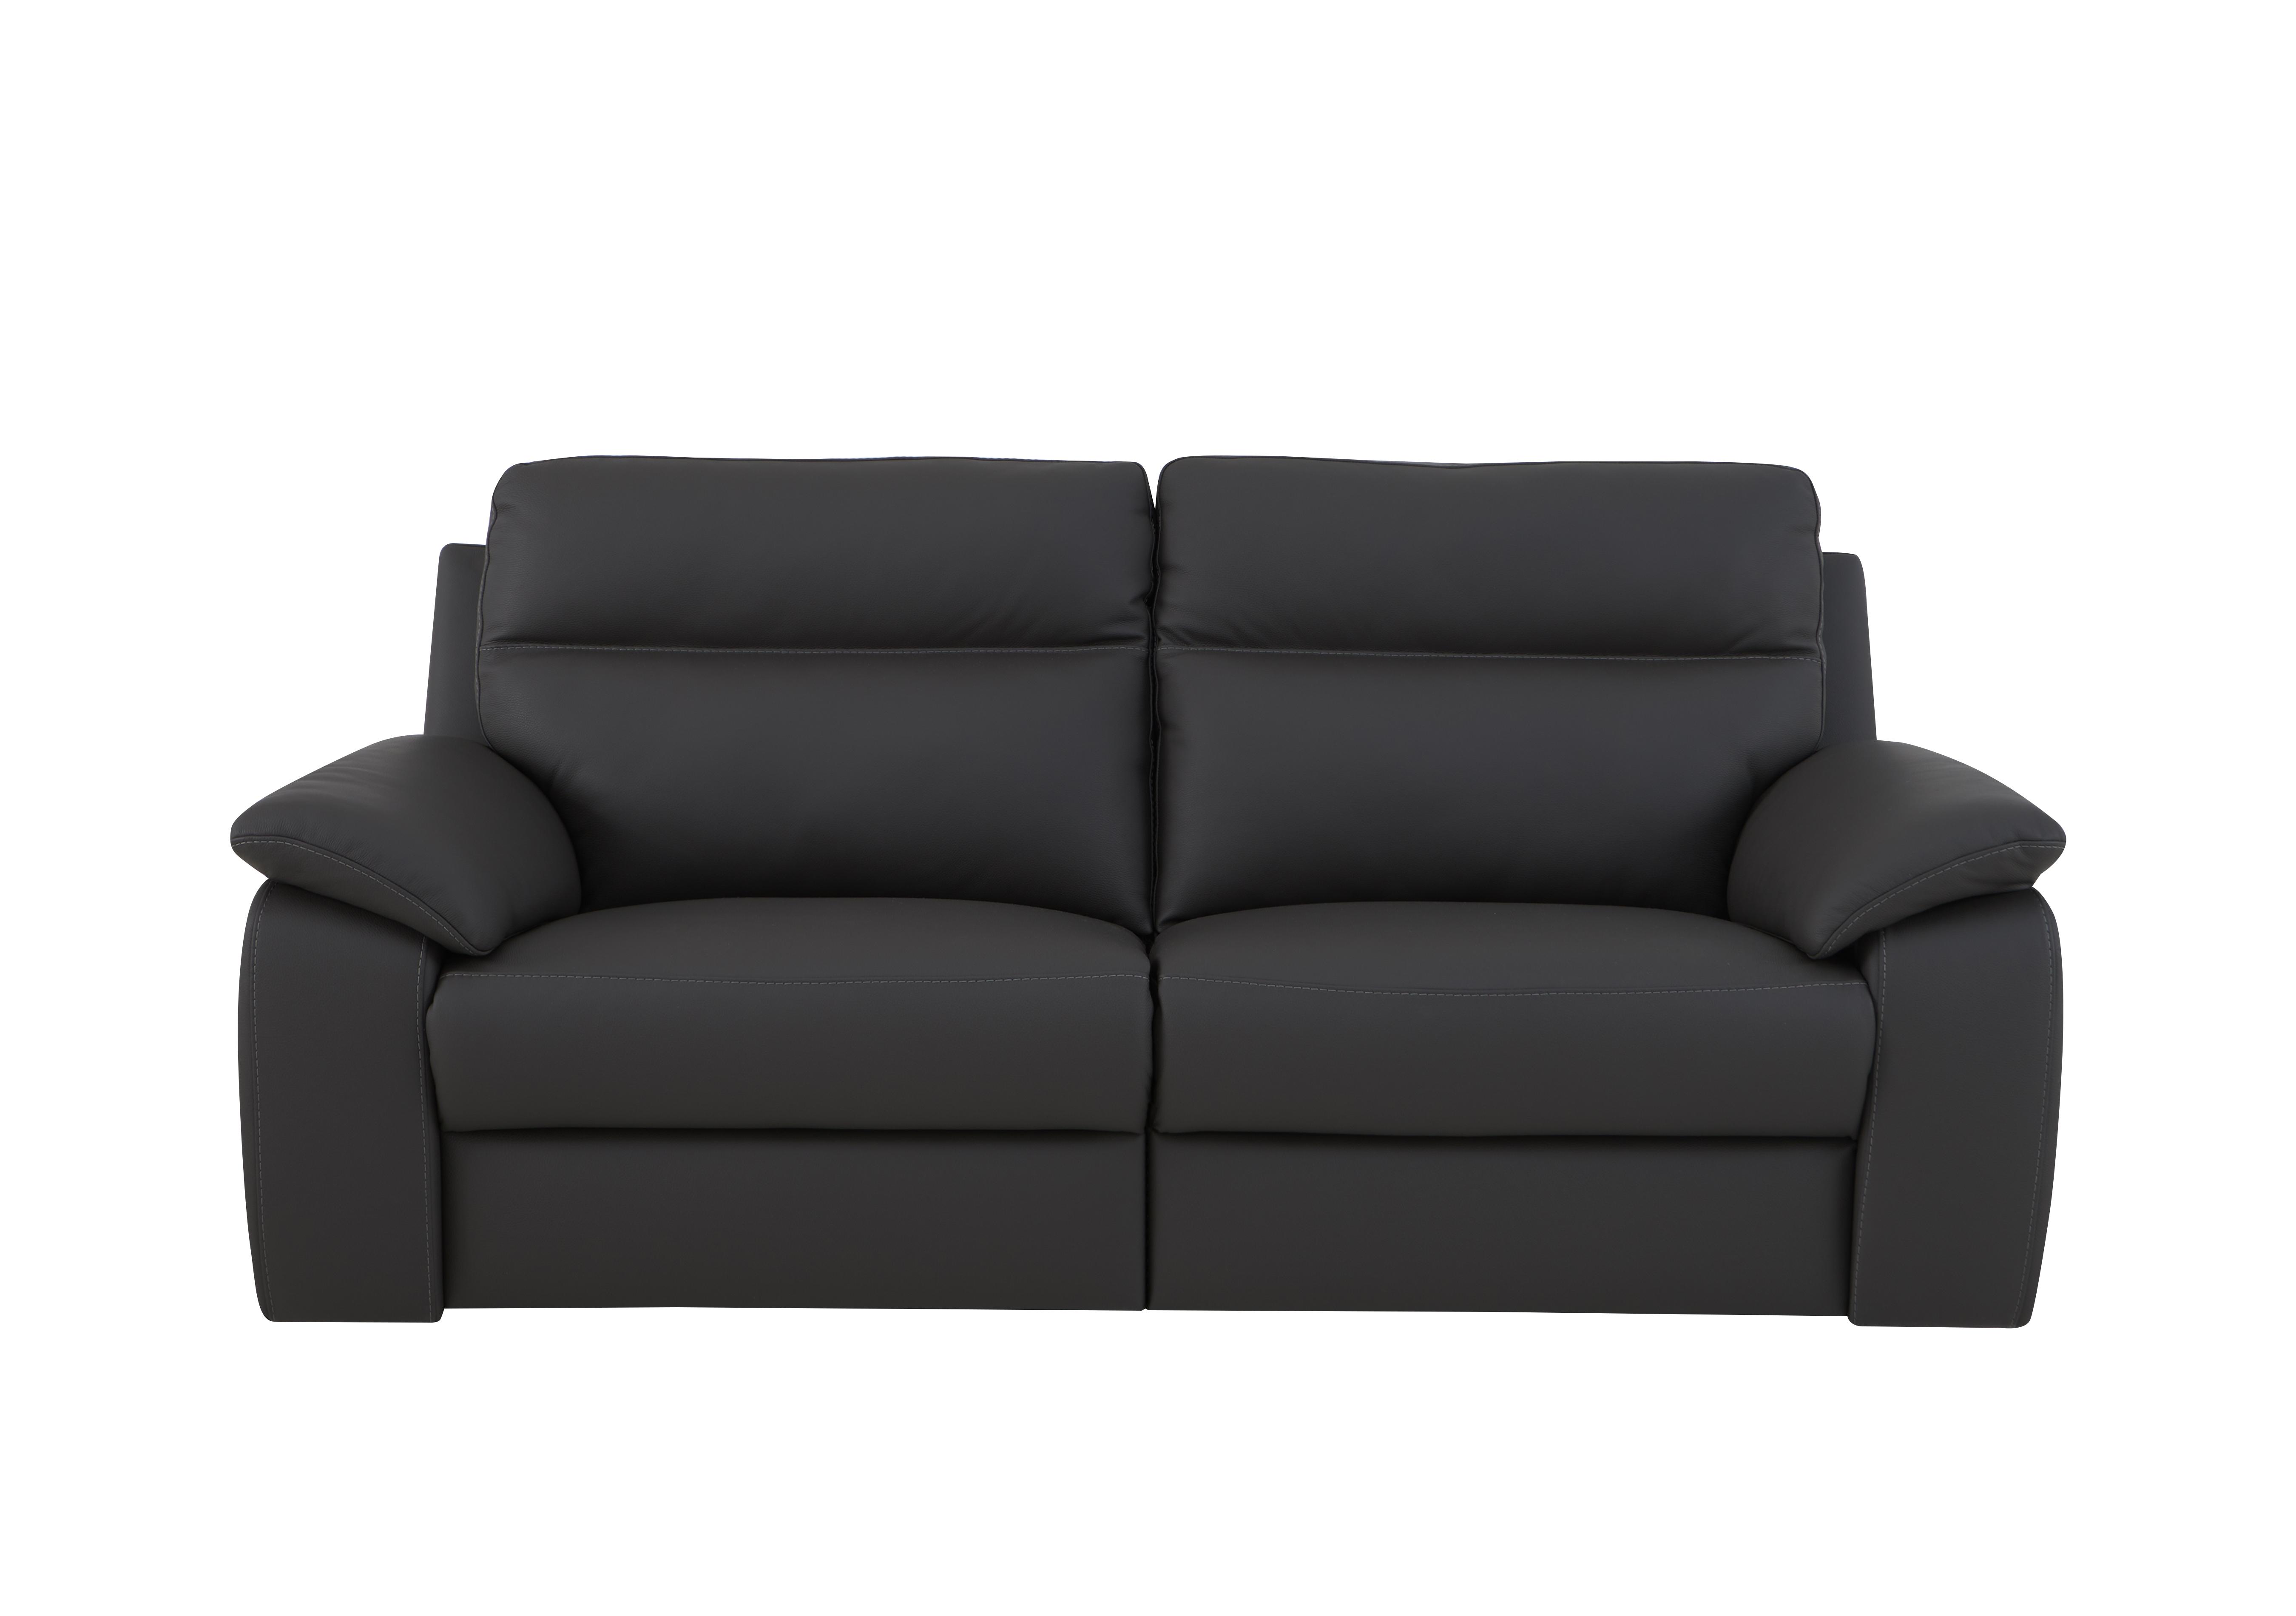 Pepino 3 Seater Leather Sofa in 327 Torello Grigio Scuro on Furniture Village